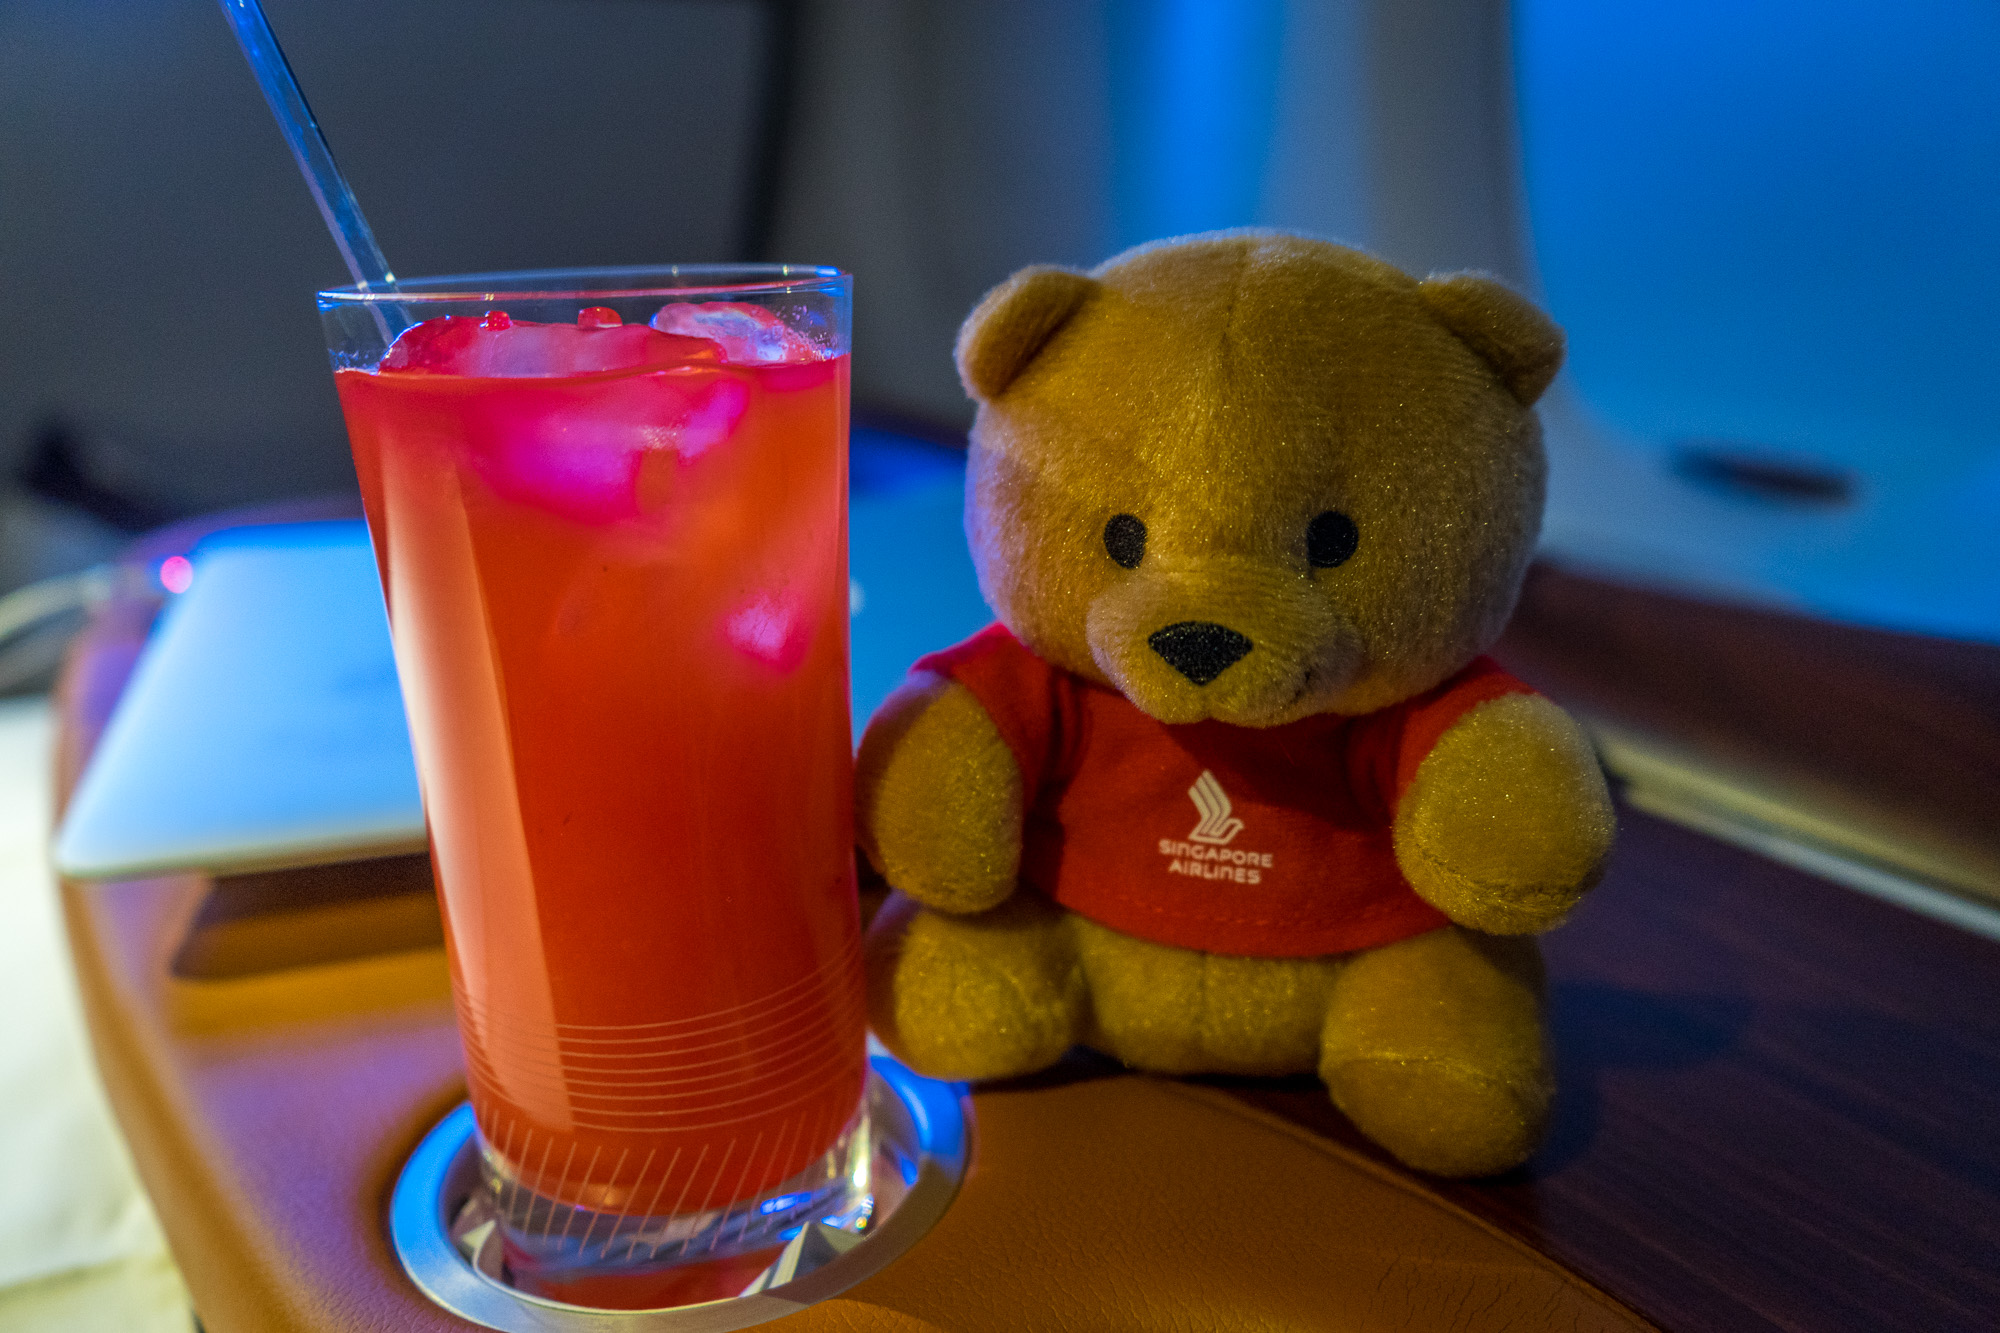 a teddy bear and a drink